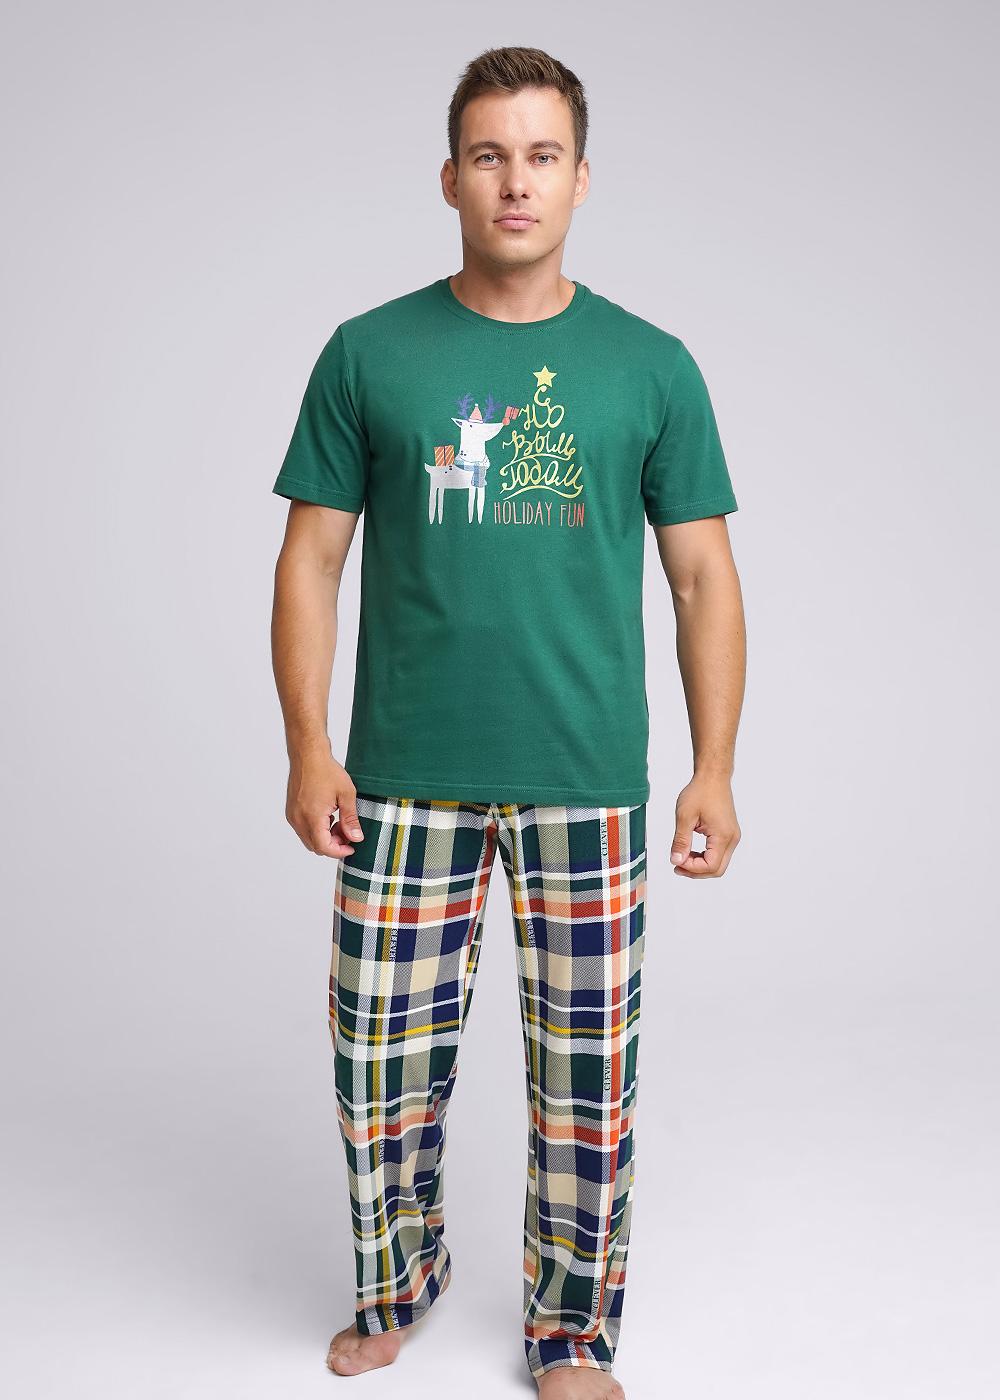 Комплект футболка + брюки Новый год для мужчин Clever 177133